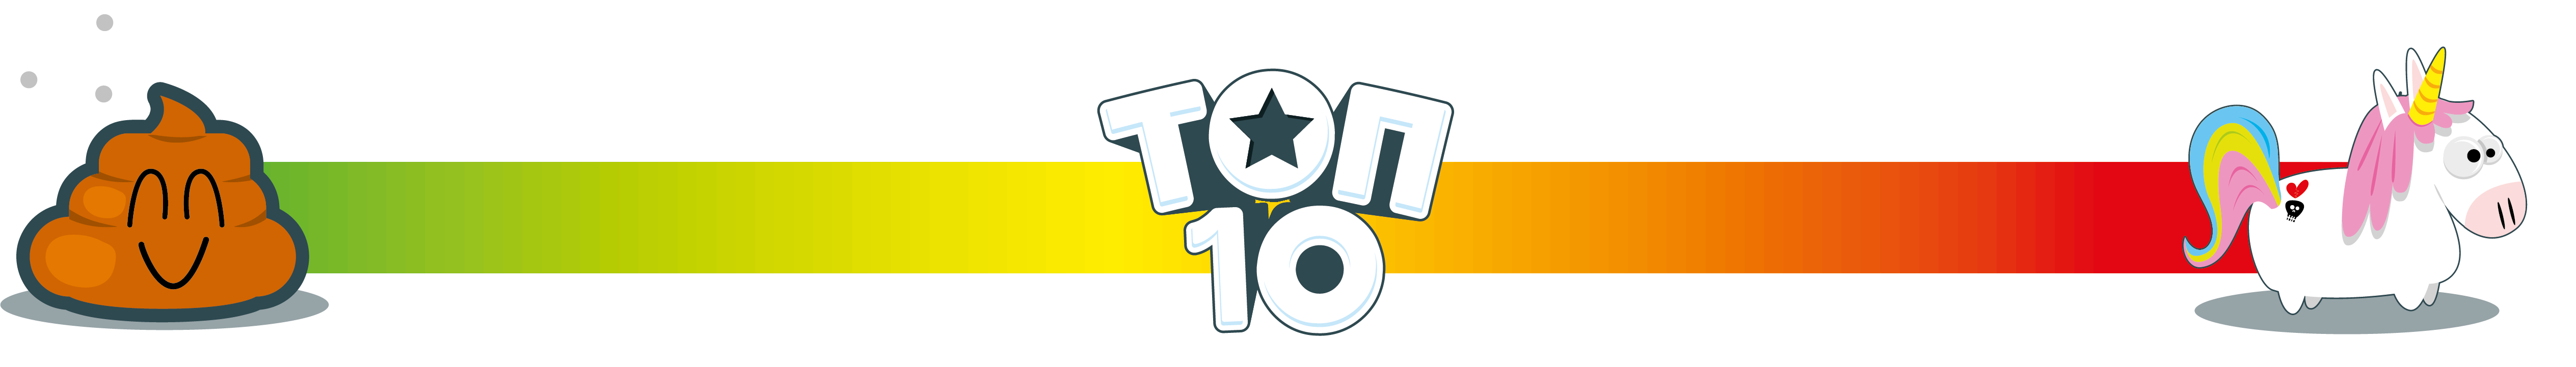 Настільна гра Топ 10 (Top Ten), бренду Ігромаг, для 4-9 гравців, час гри < 30хв. - 11 - KUBIX 